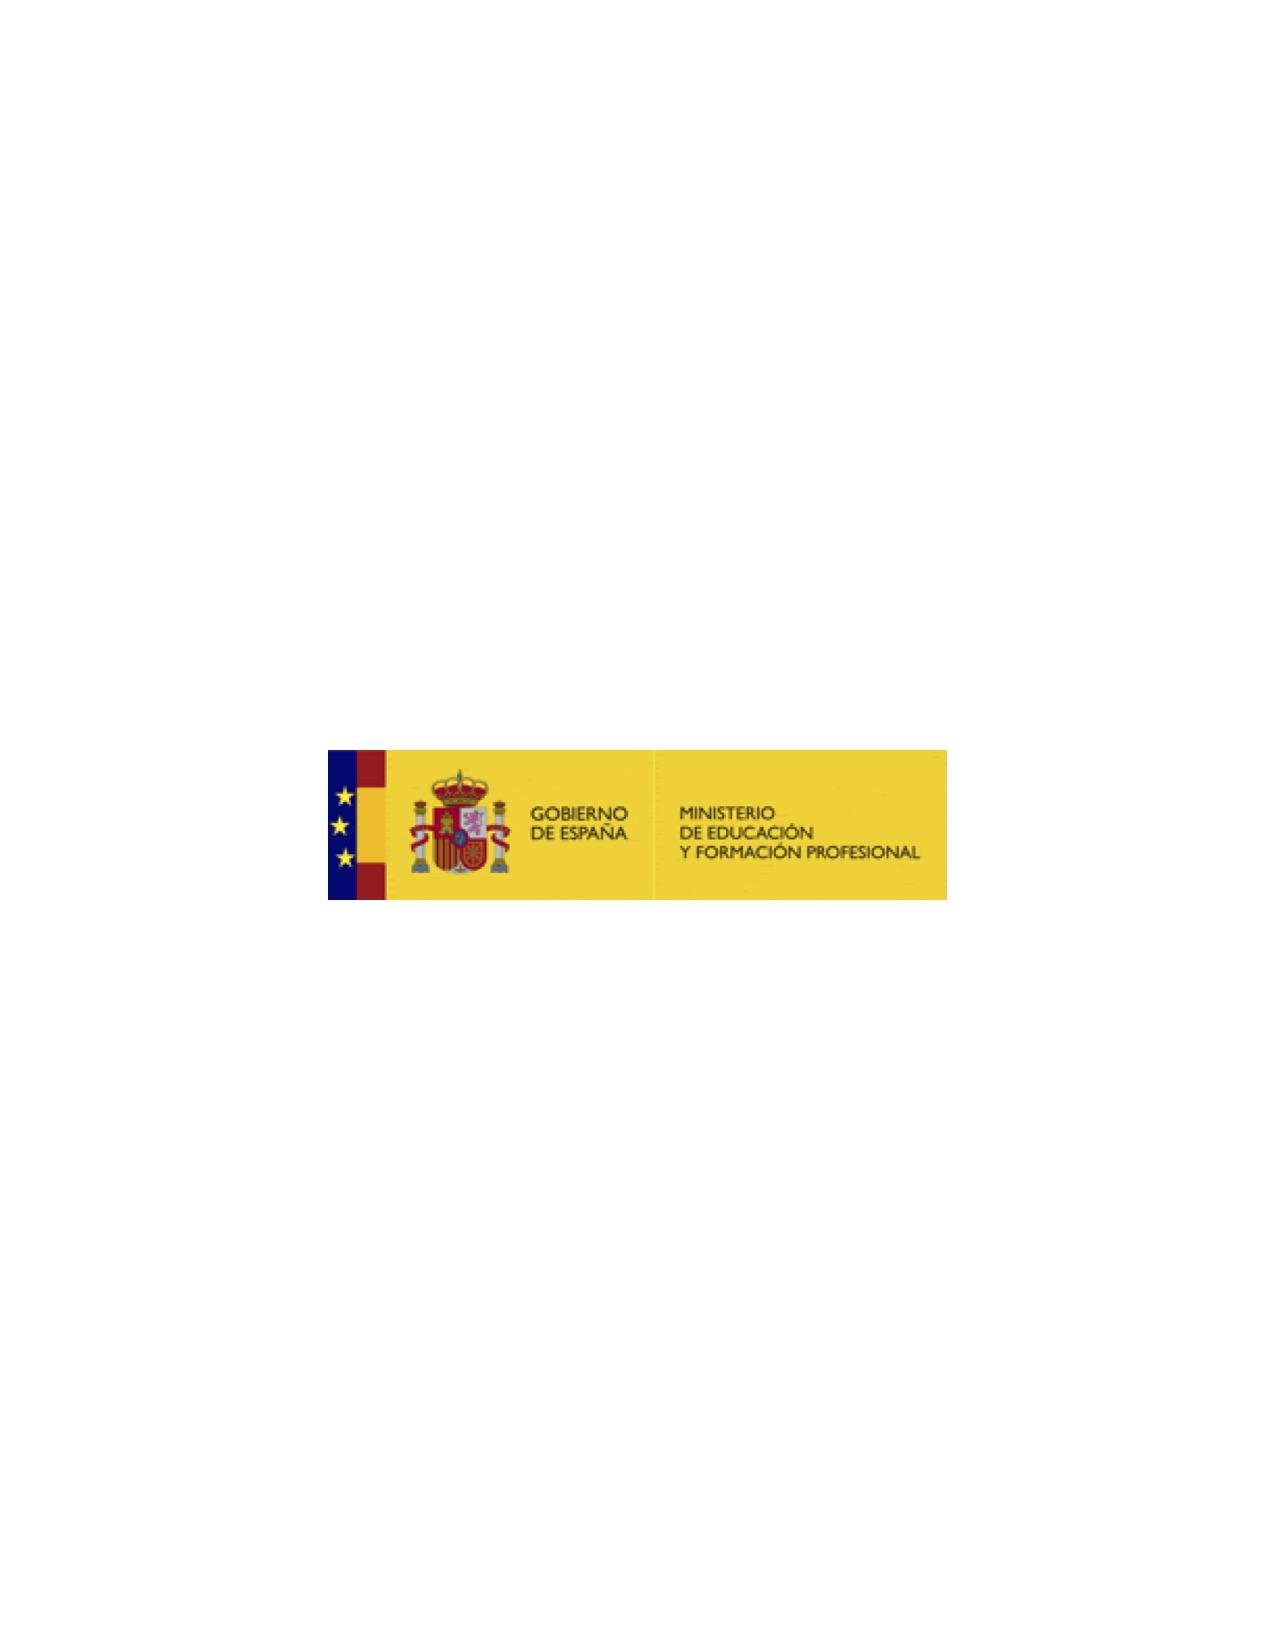 Charla de la Consejería de Educación de España en Estados Unidos y Canadá, Agregaduría de Educación en Nueva York – Consulado General de España en NY